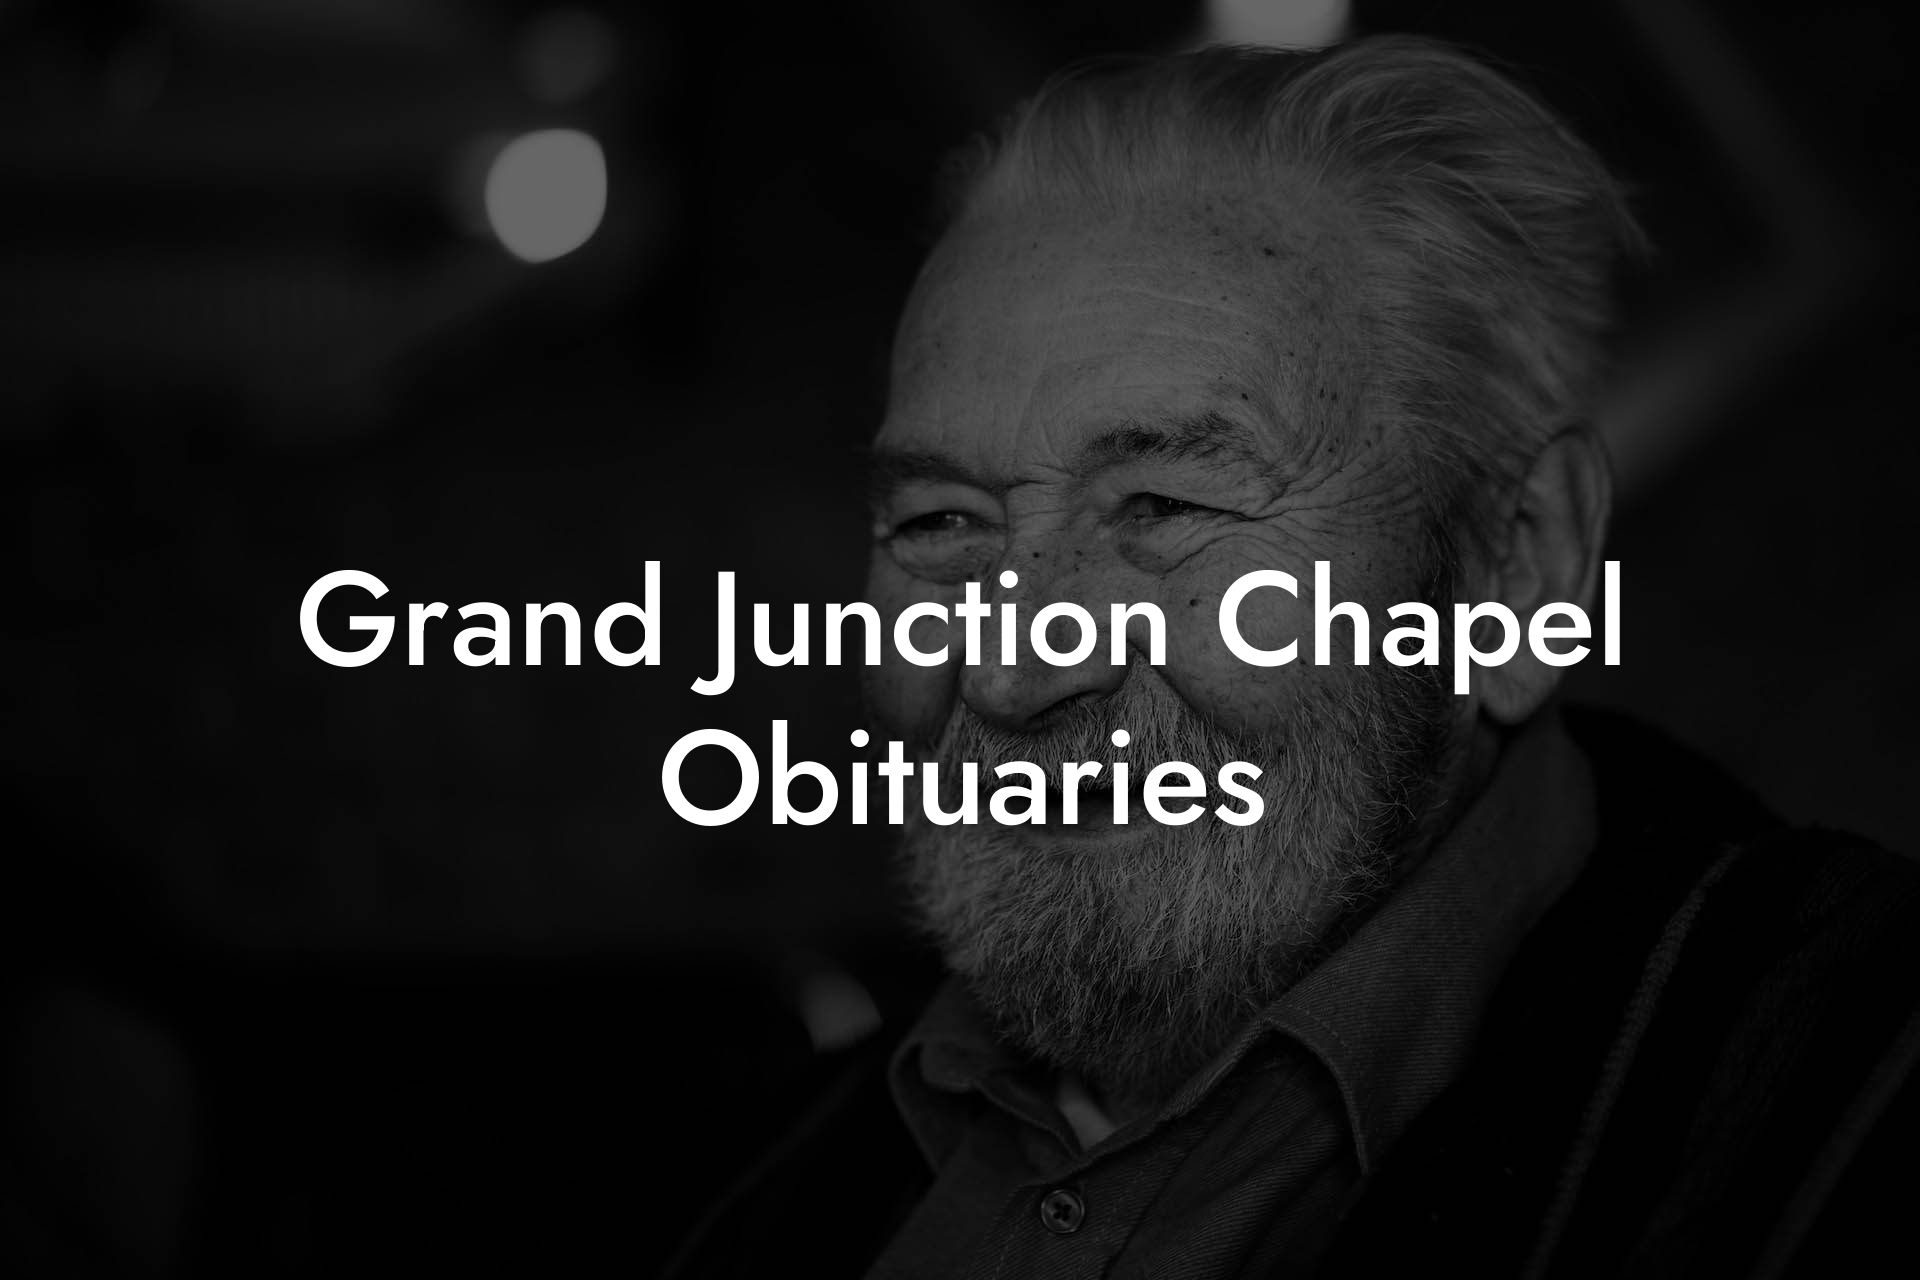 Grand Junction Chapel Obituaries